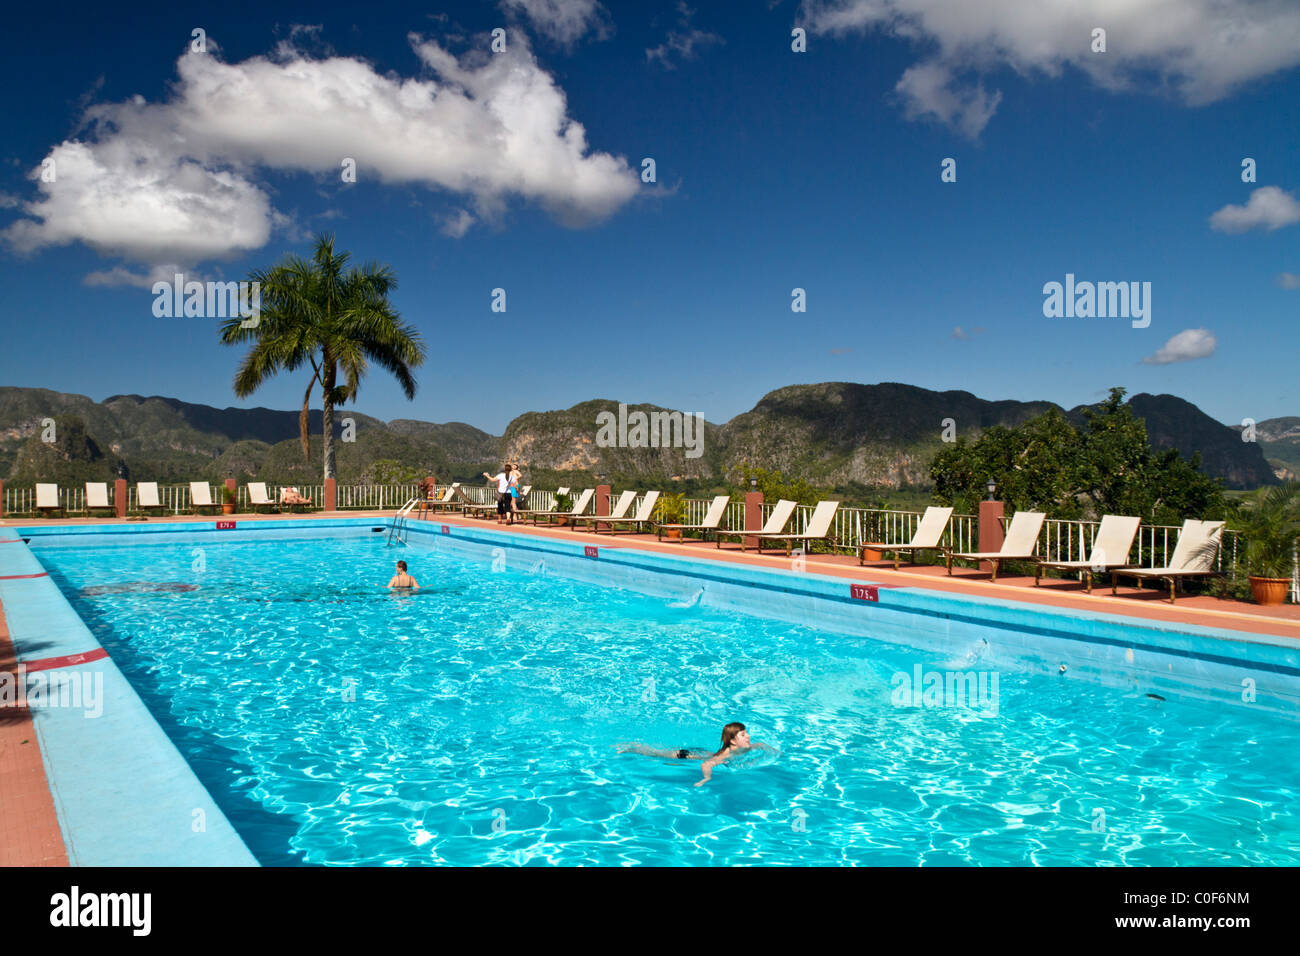 El Valle de Viñales, Piscina Hotel Jaminez, provincia Pinar del Río, Cuba Foto de stock